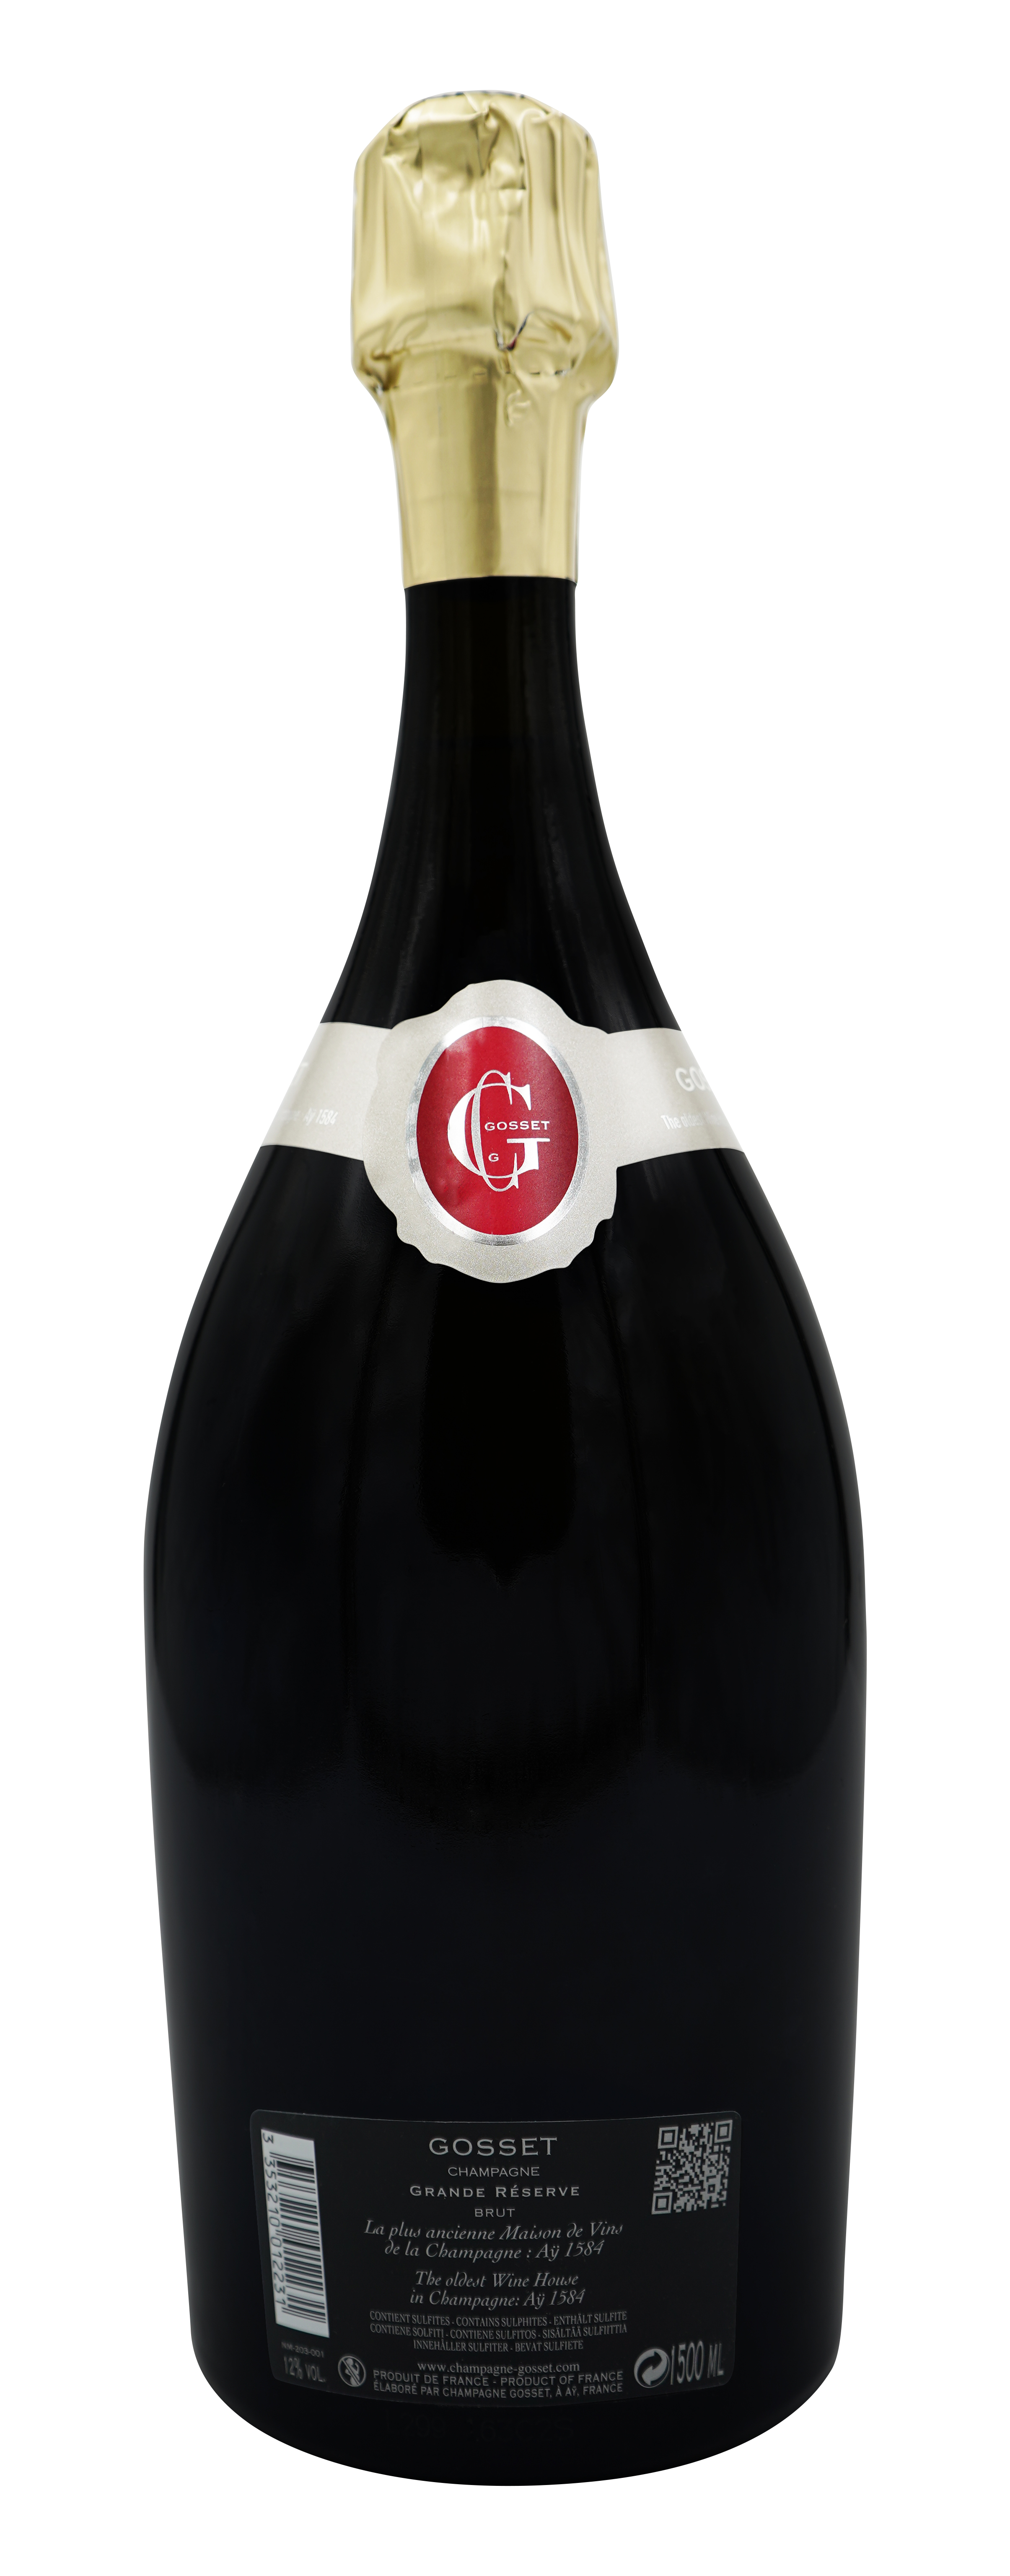 Gosset Champagner Grand Reserve Magnum - back label